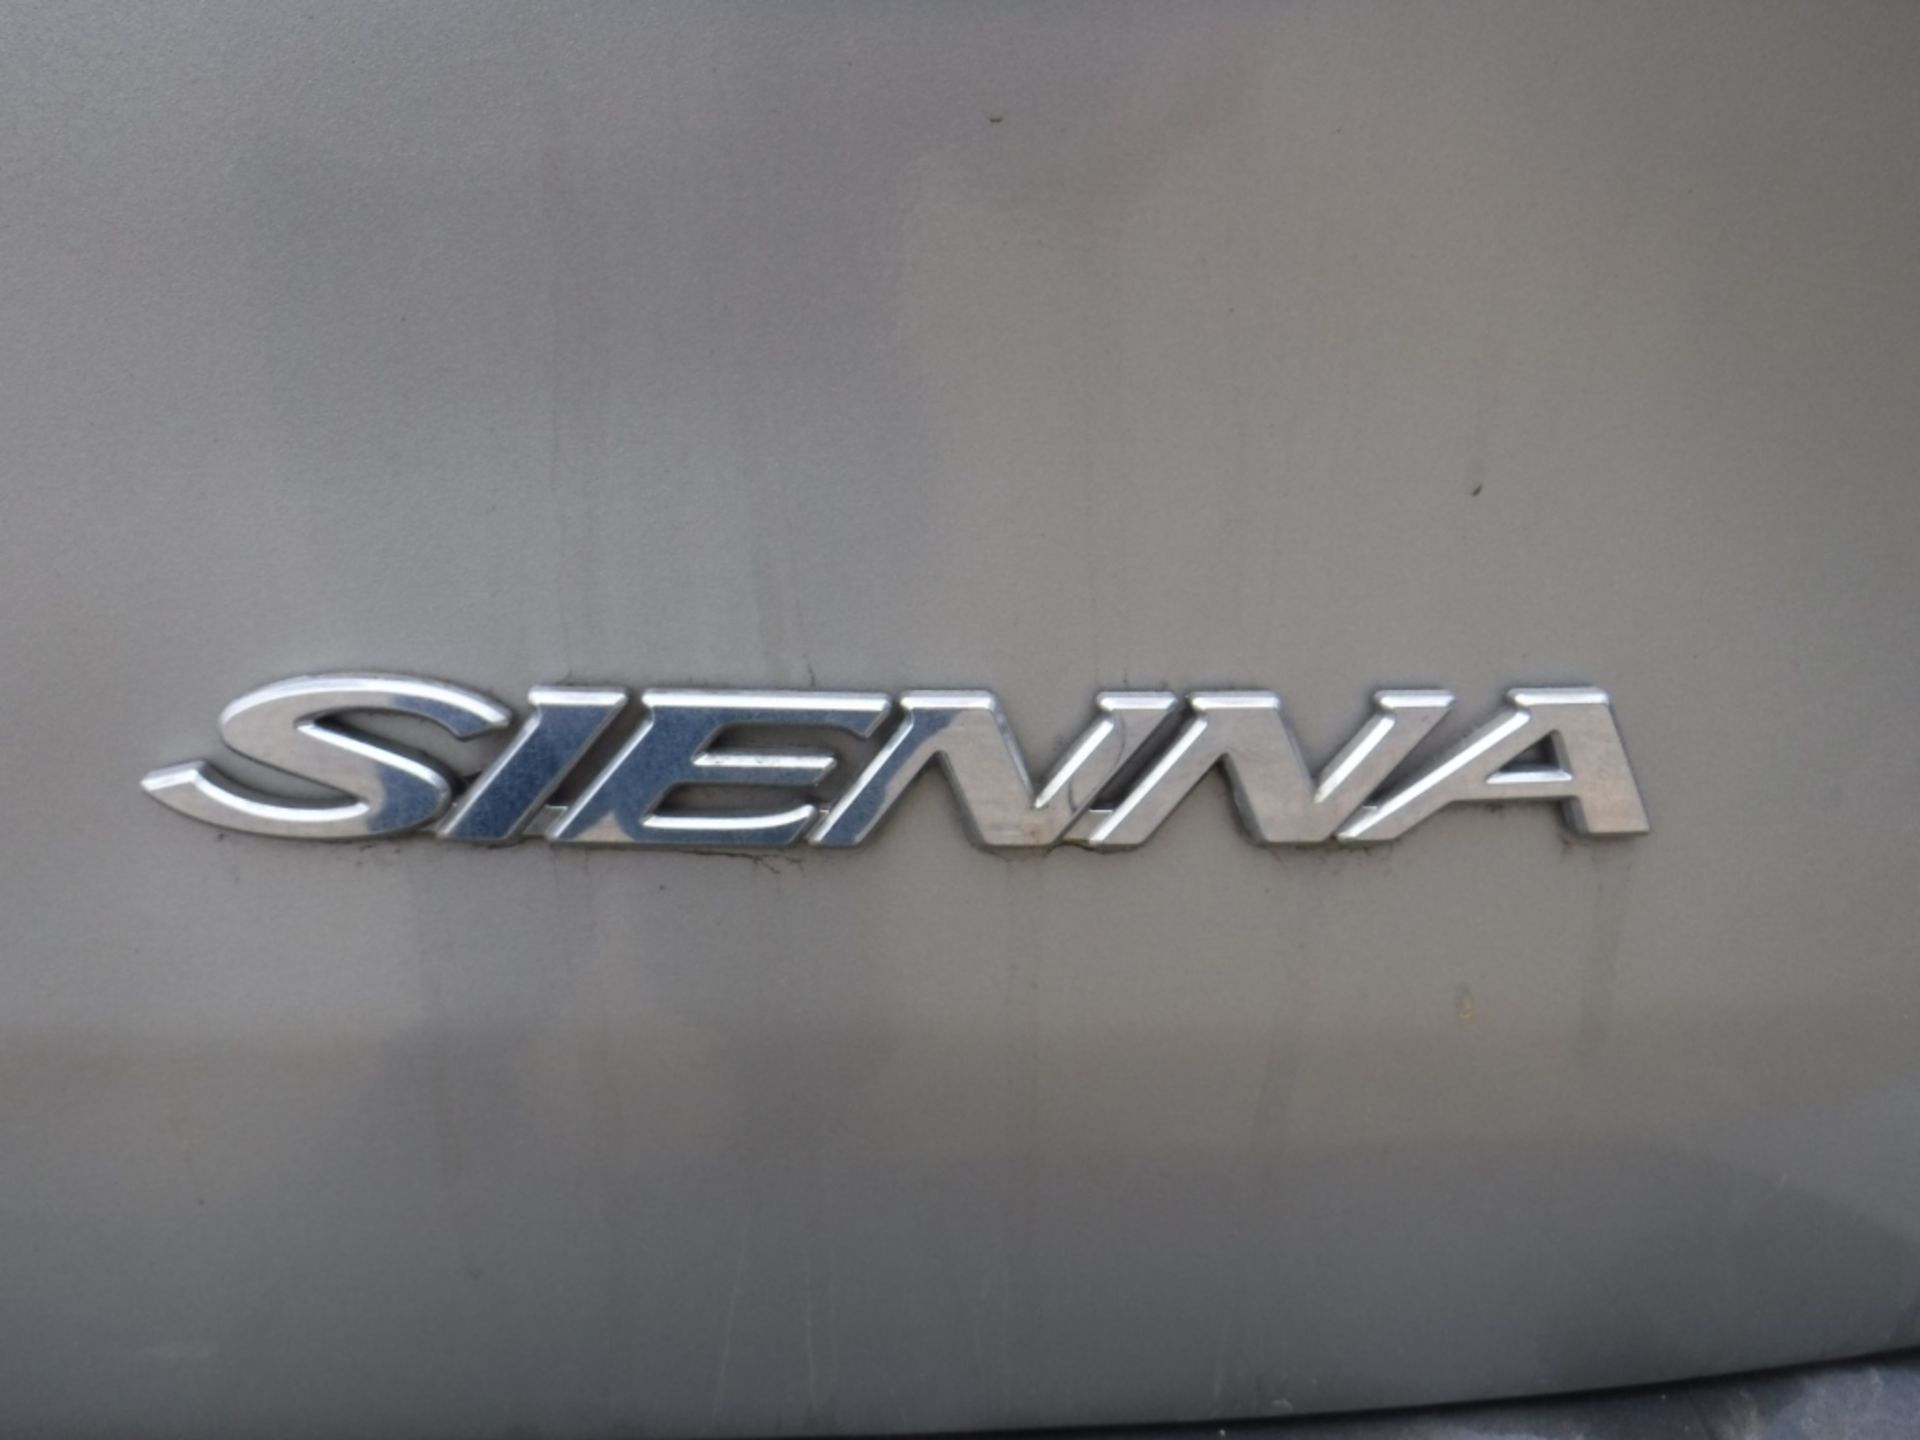 Toyota Sienna Mini Van, - Image 19 of 19